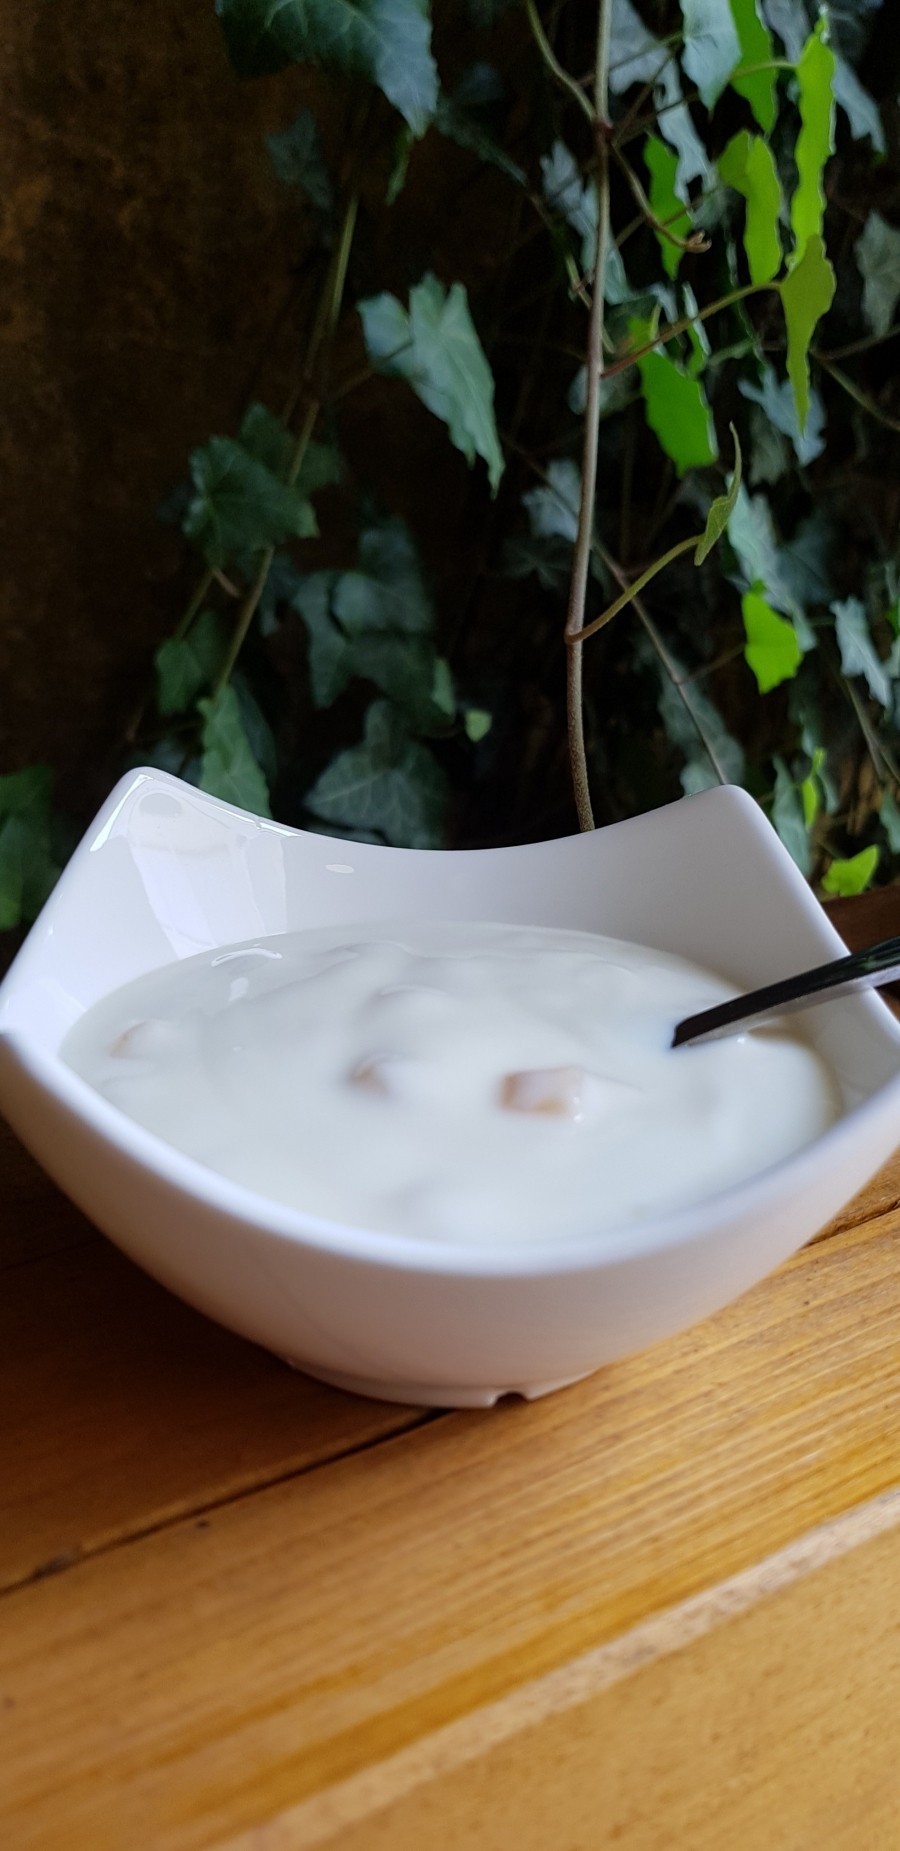 Tatsächlich helfen Joghurtkulturen dabei, einen durch Bakterien ausgelösten Mundgeruch, zu reduzieren.